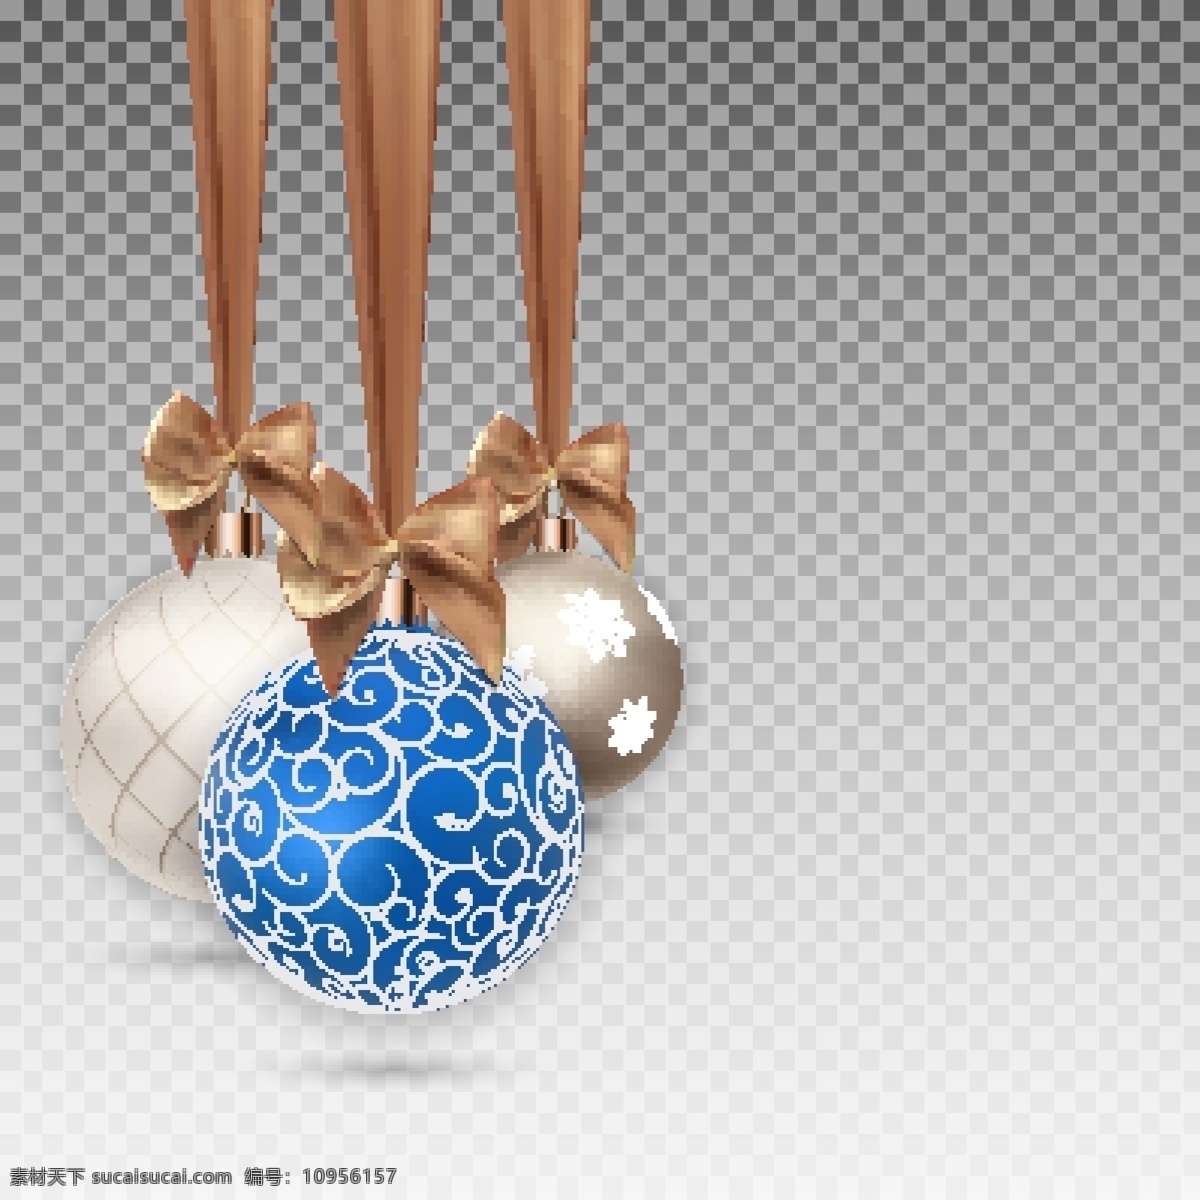 圣诞 挂 球 矢量 挂球 蓝色的球 圣诞背景 圣诞素材 矢量素材